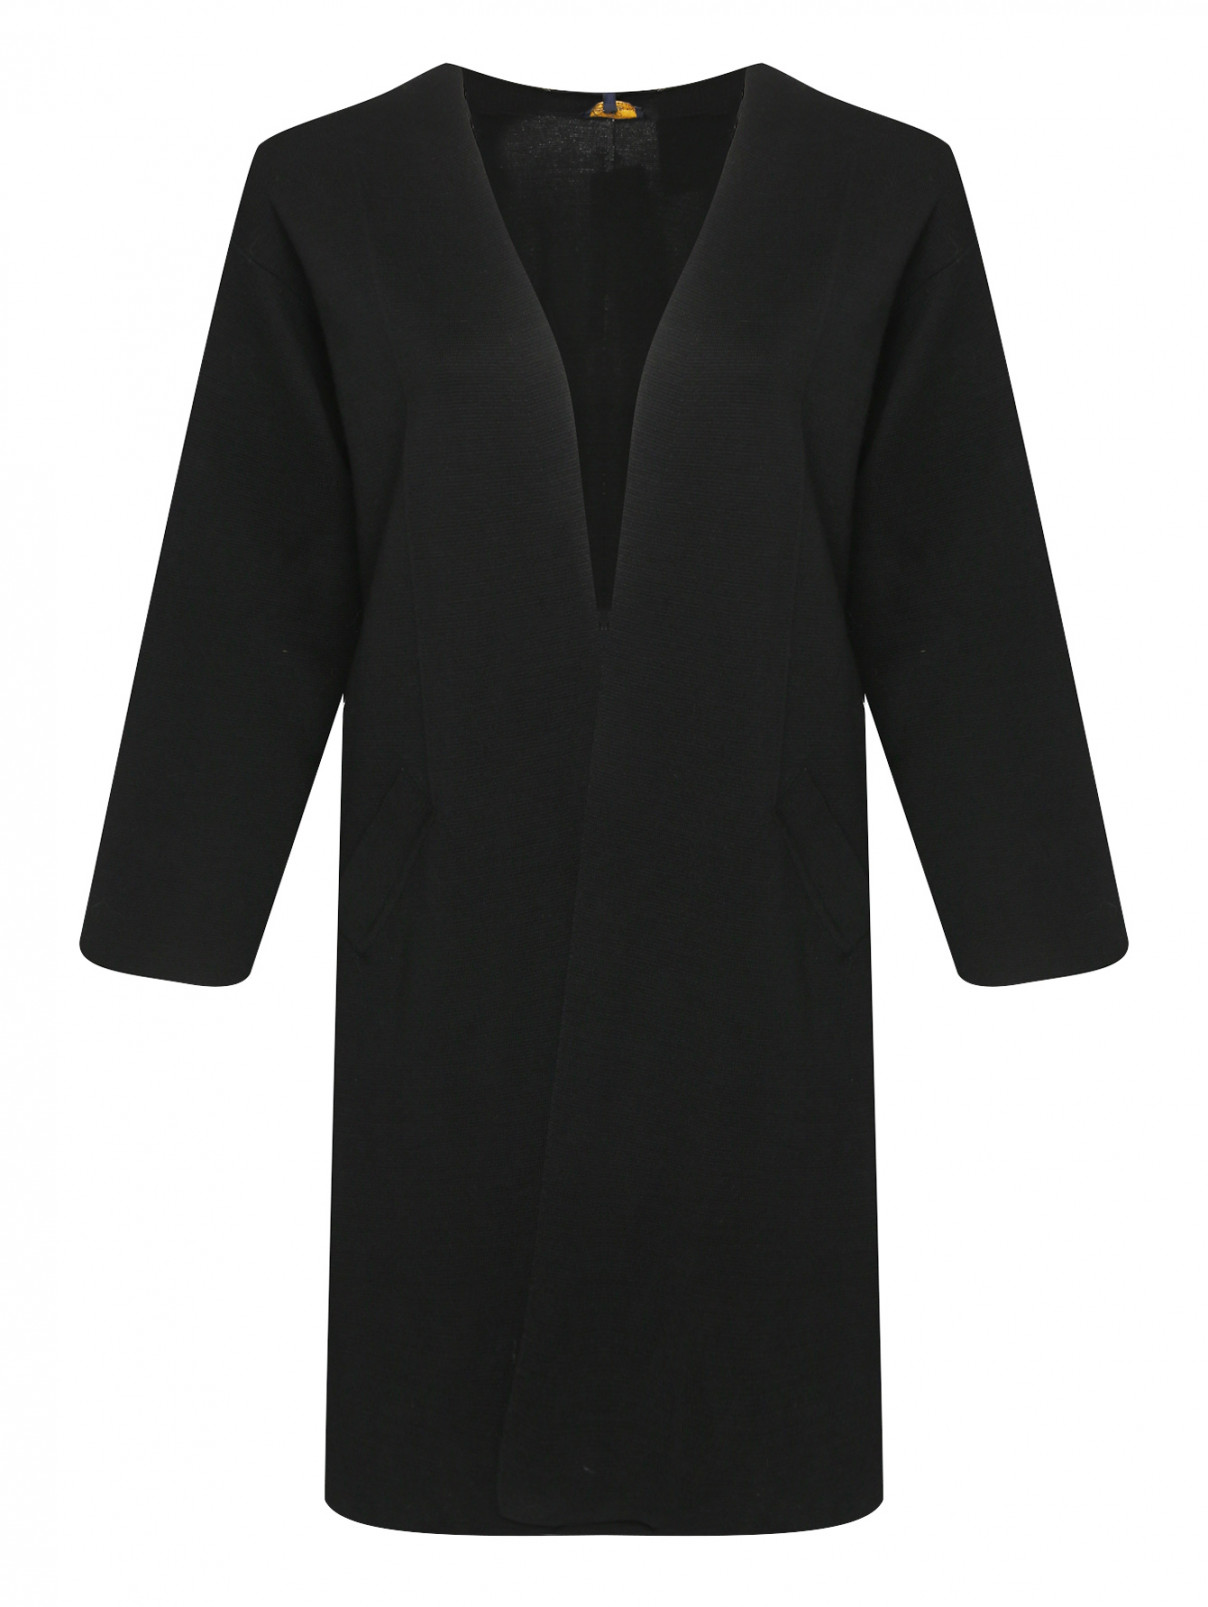 Кардиган из шерсти с карманами Luisa Spagnoli  –  Общий вид  – Цвет:  Черный